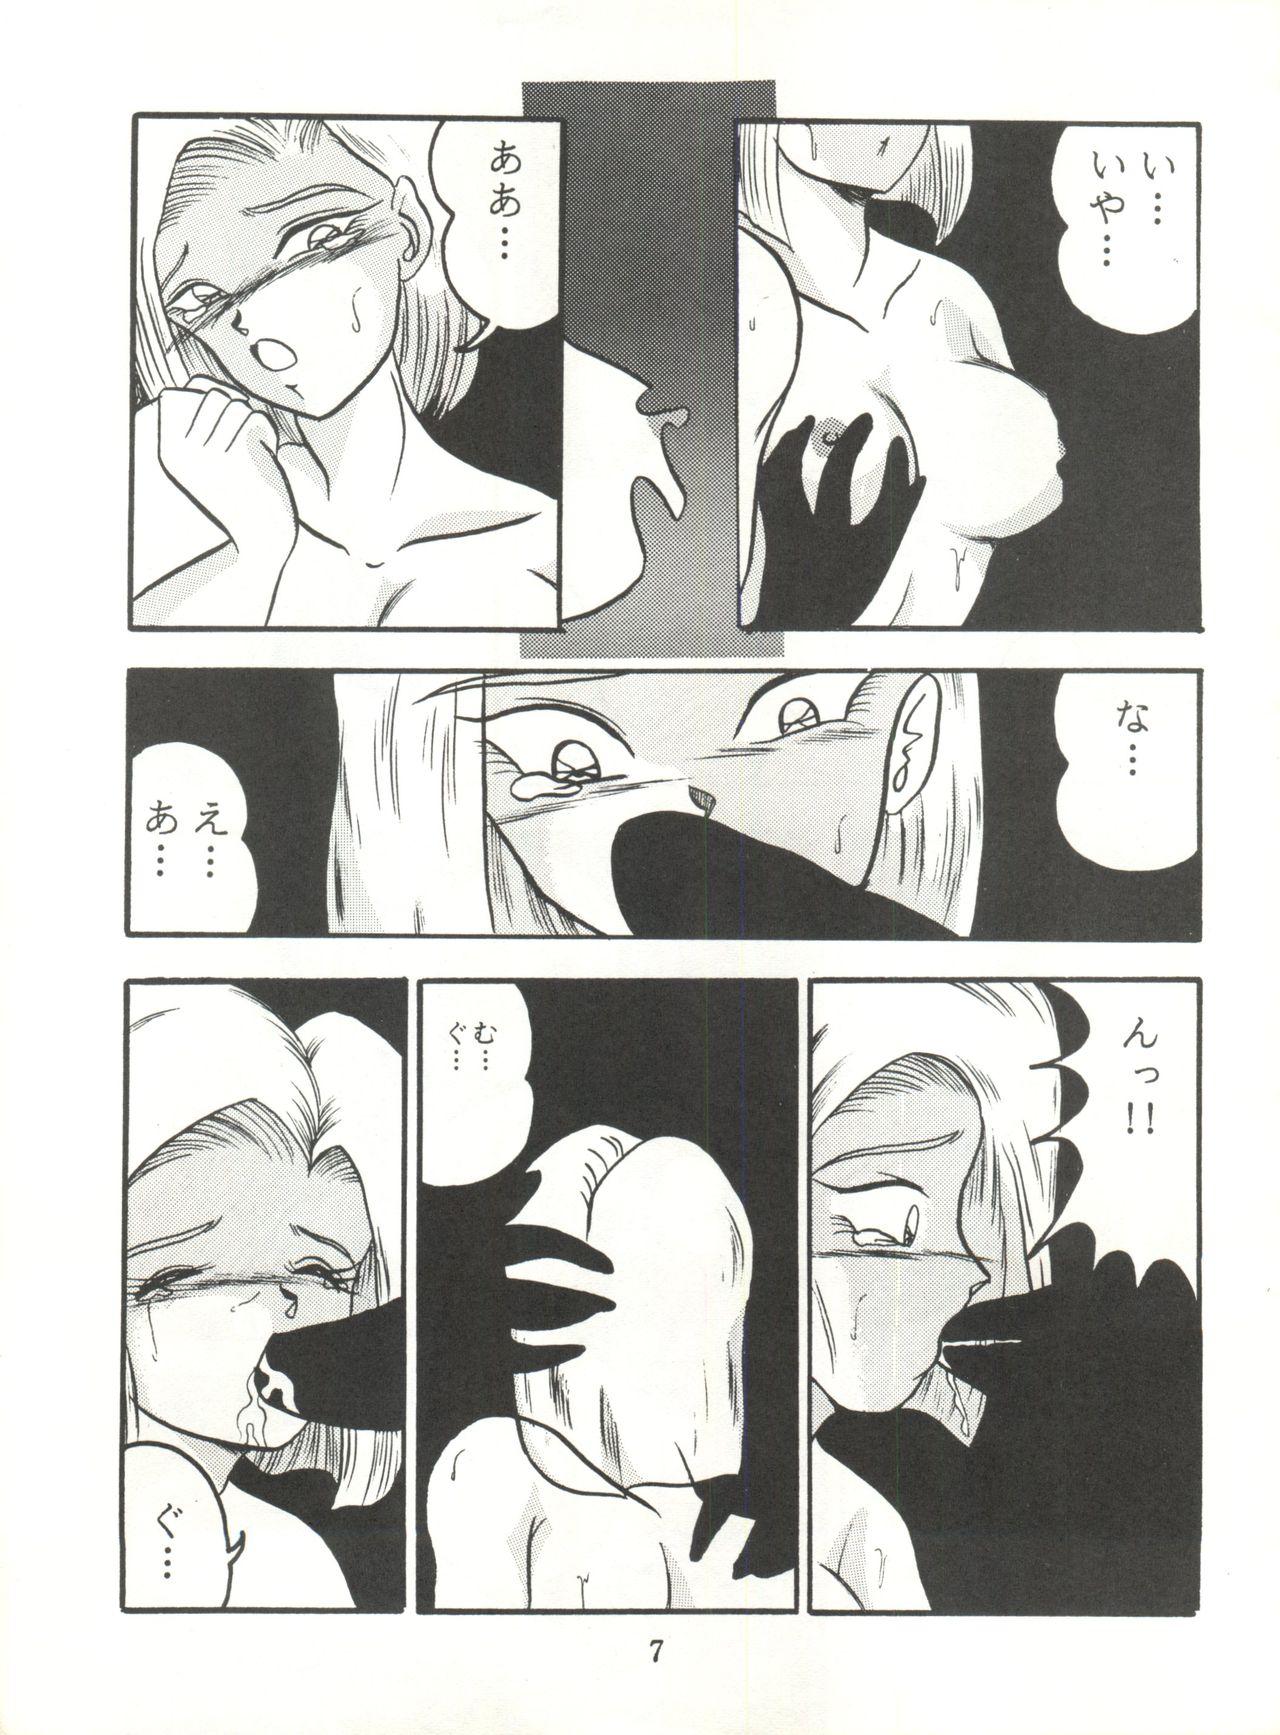 Titten Replicate - Dragon ball z Hot Sluts - Page 7